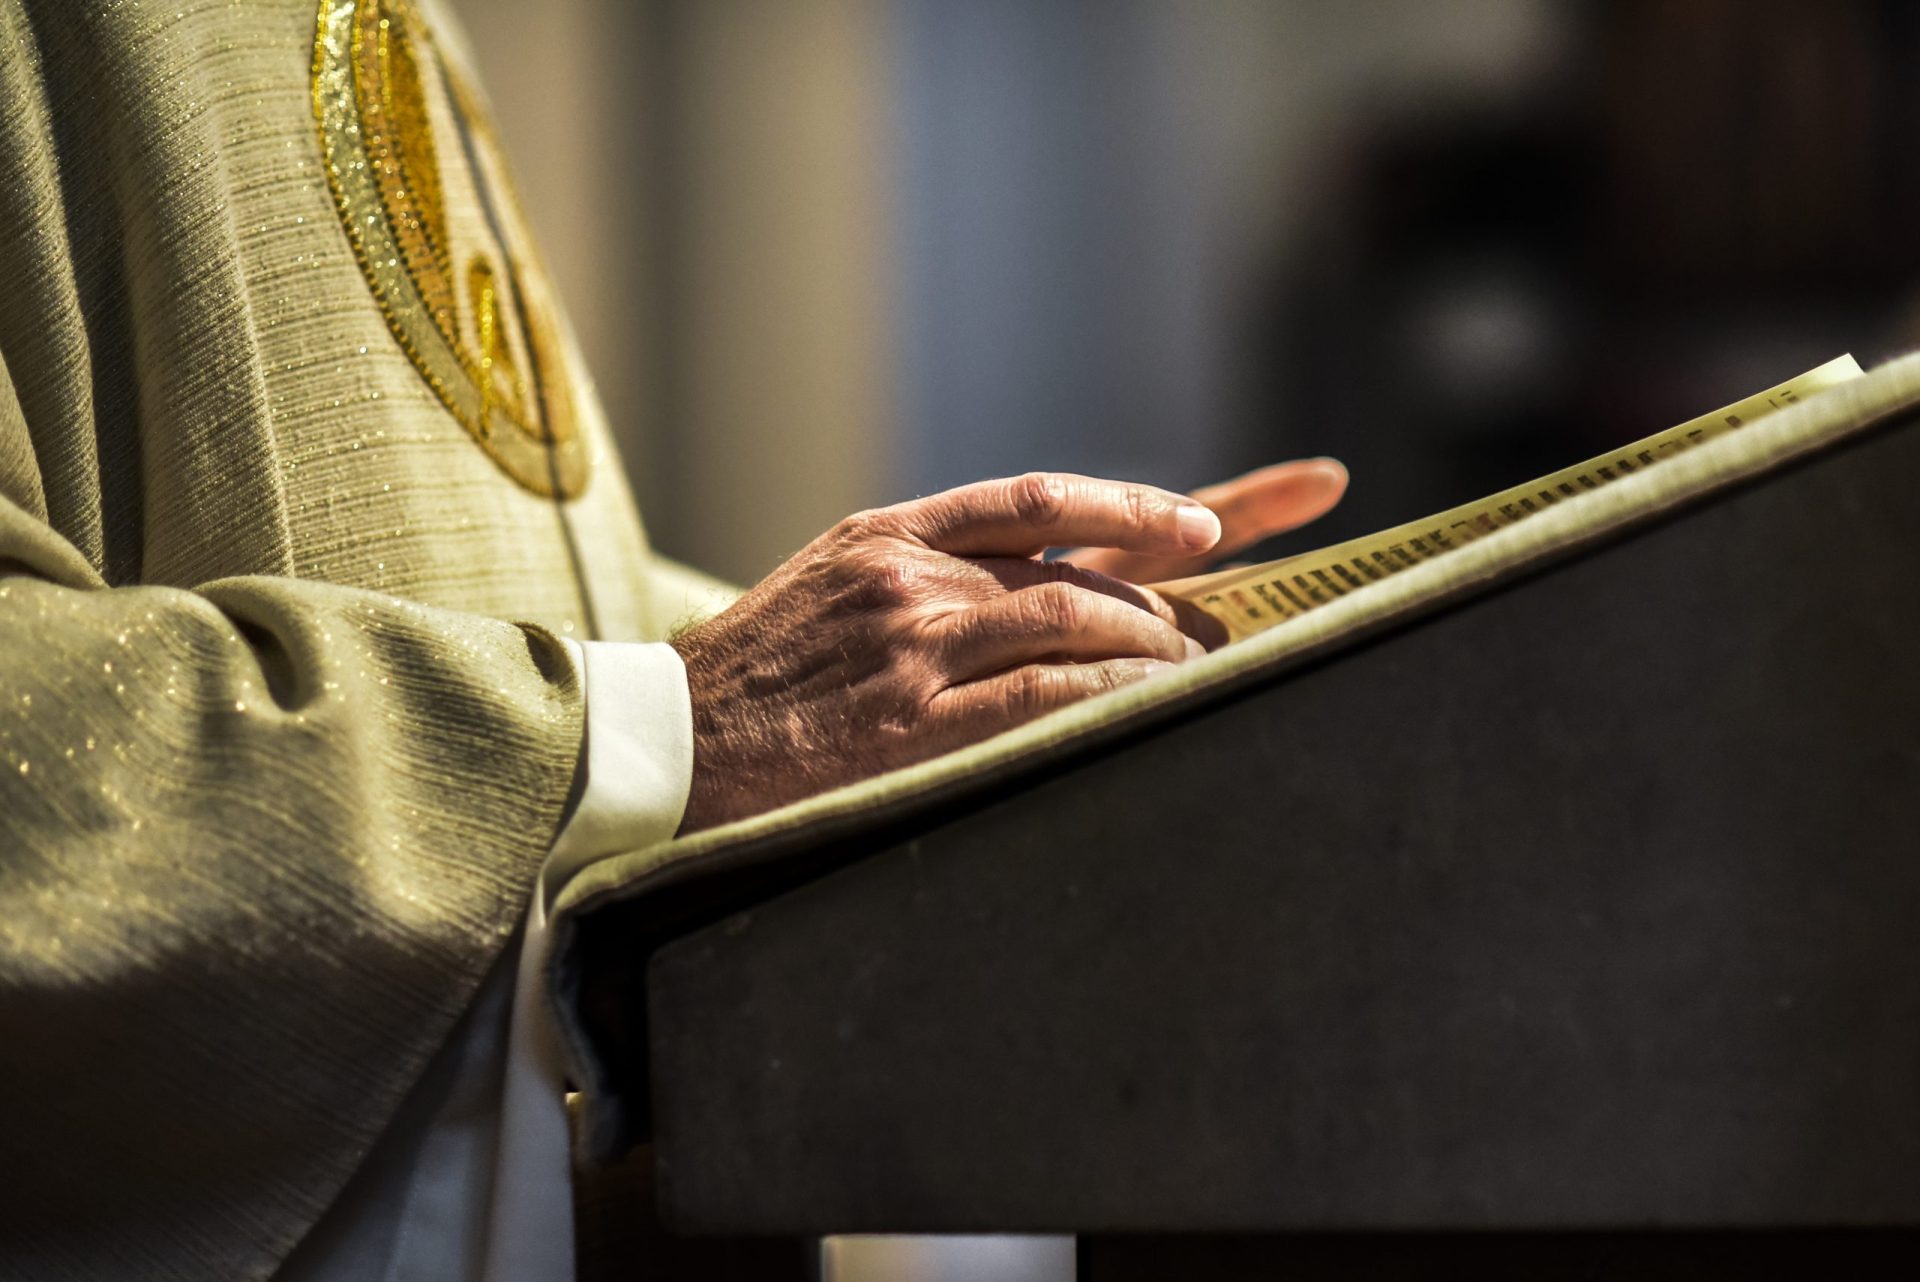 Detido ex-padre de 82 anos por suspeitas de violar mulher de 47 em sessão de exorcismo